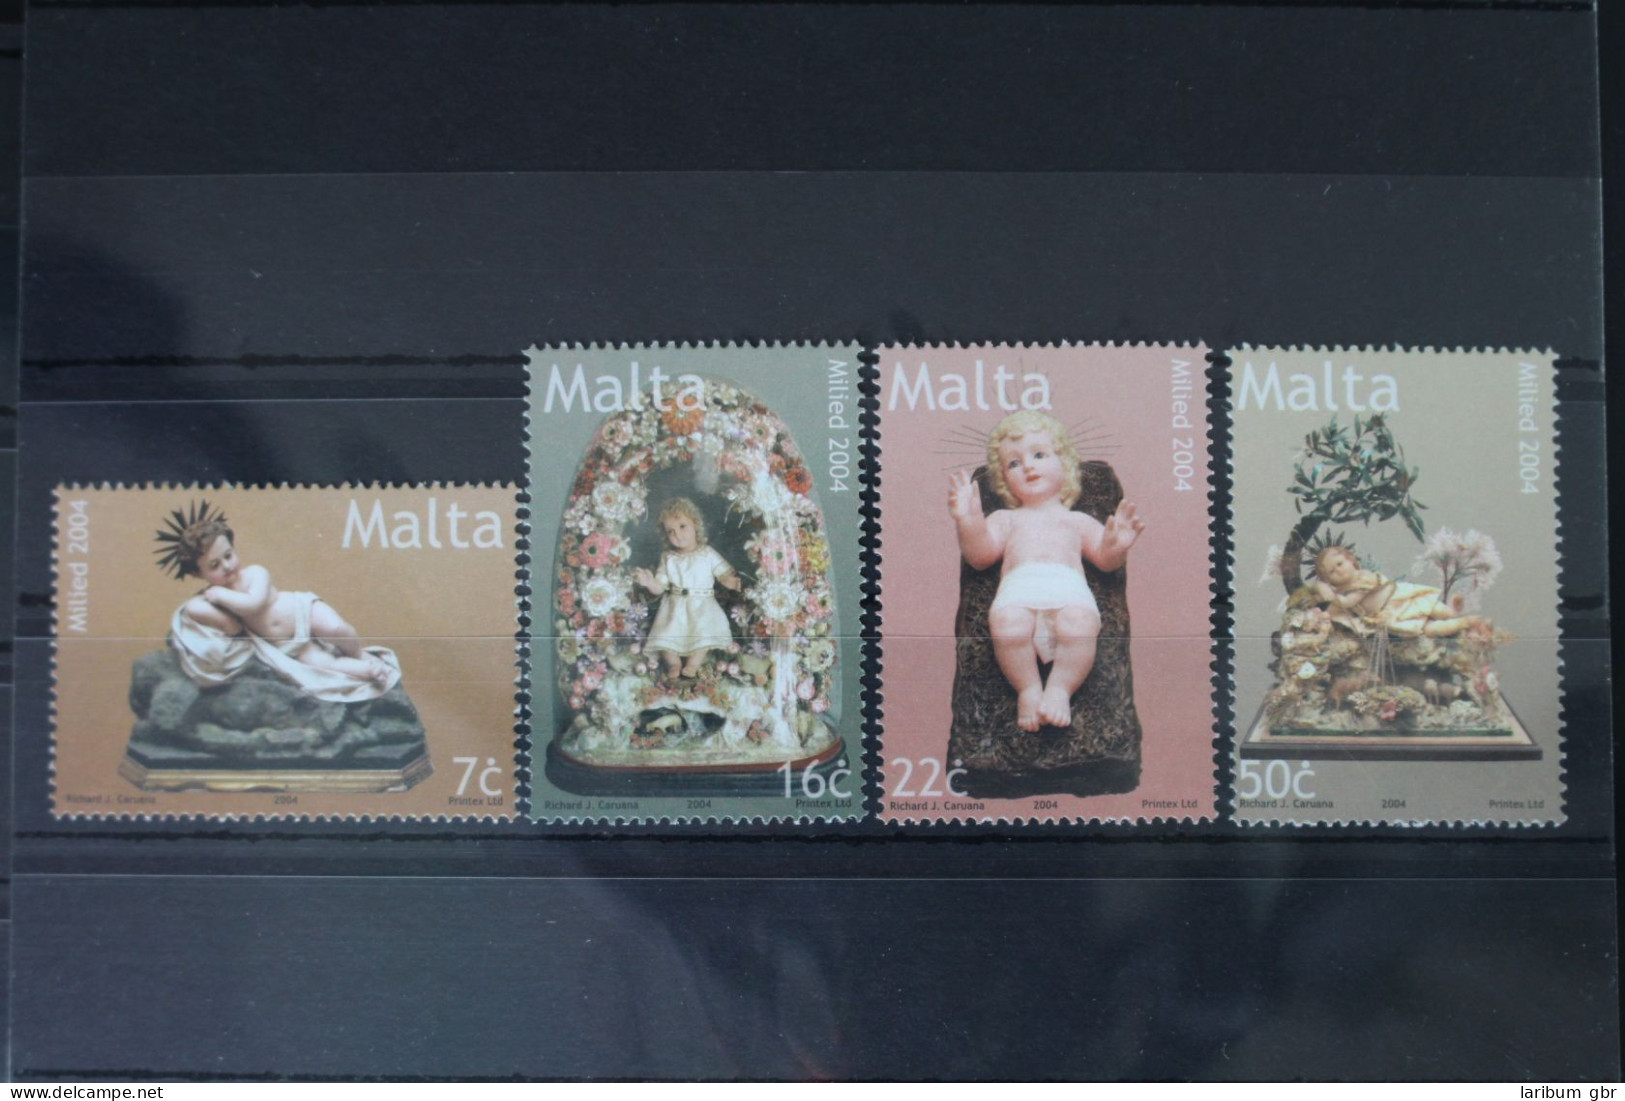 Malta 1367-1370 Postfrisch #WI164 - Malte